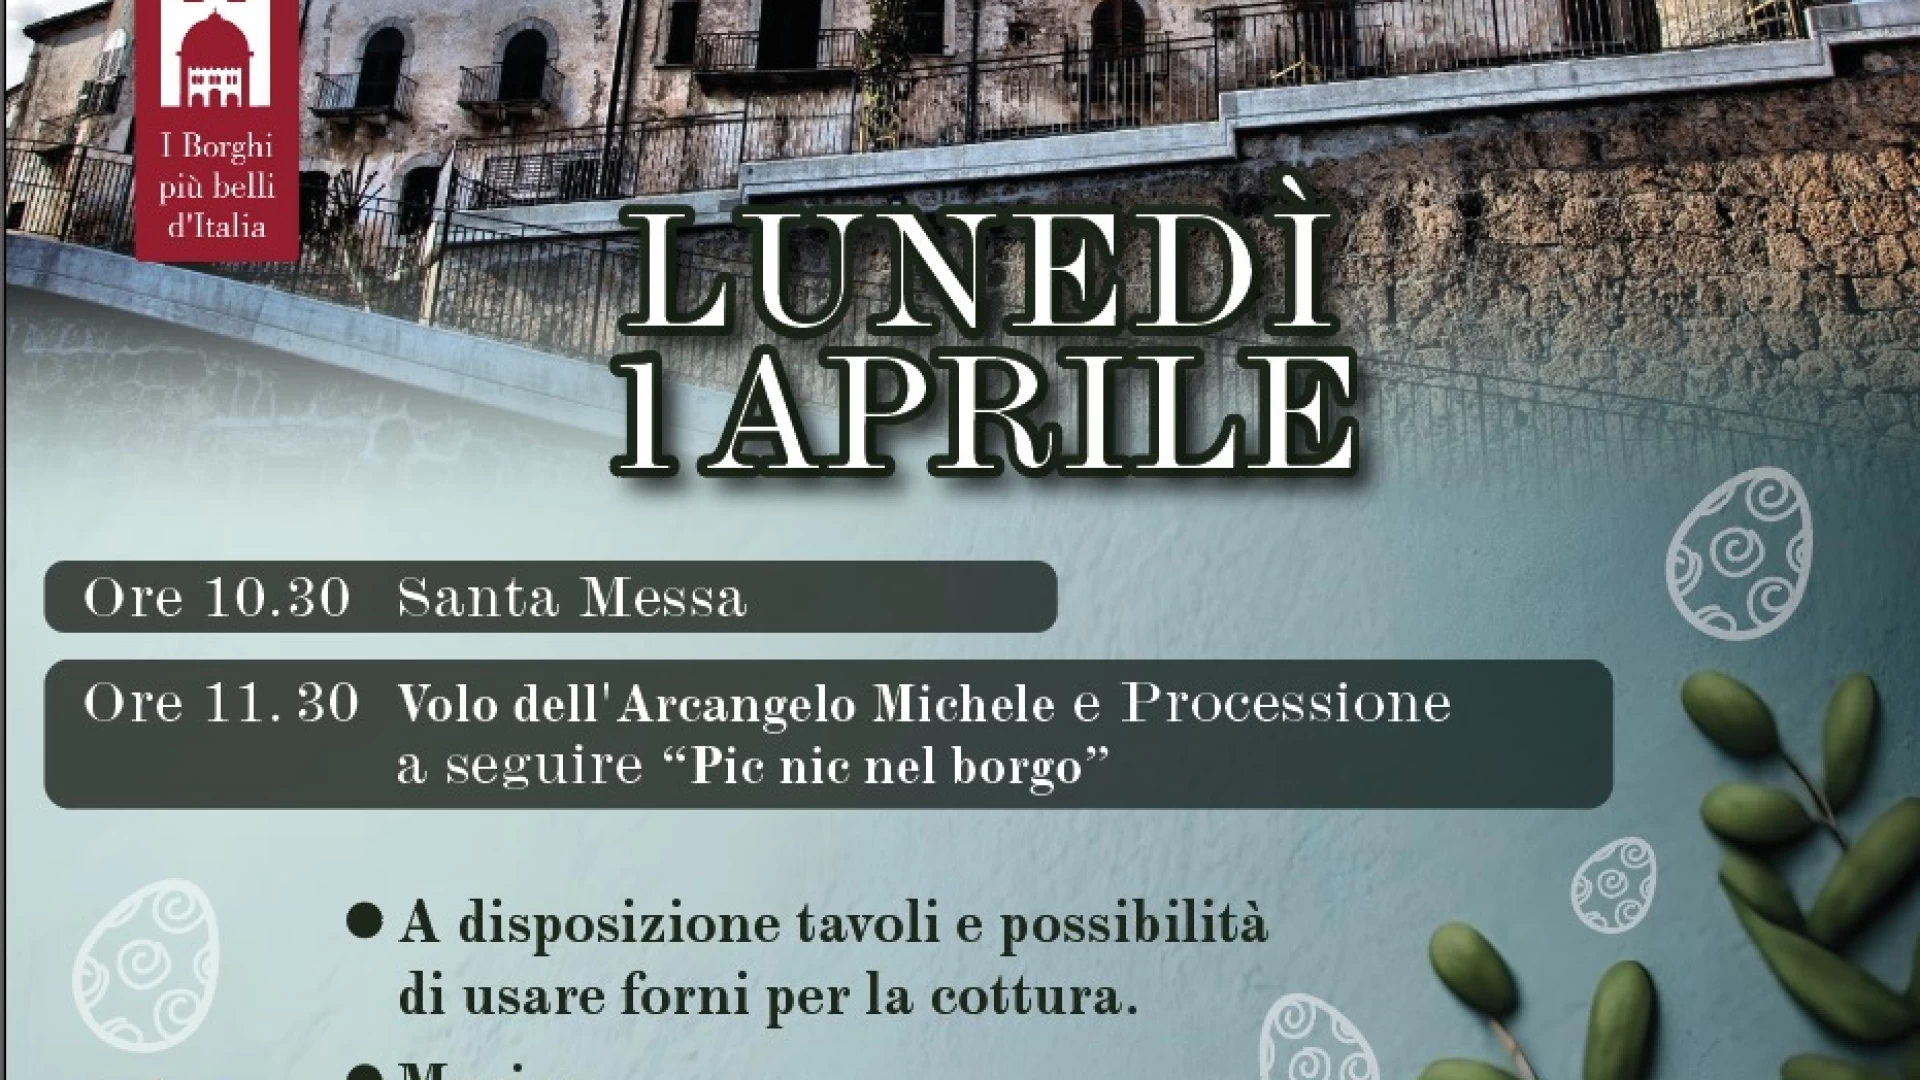 Fornelli: appuntamento con la Pasquetta al Borgo per lunedì 1 aprile. Si ripetera’ il volo dell’arcangelo Michele.